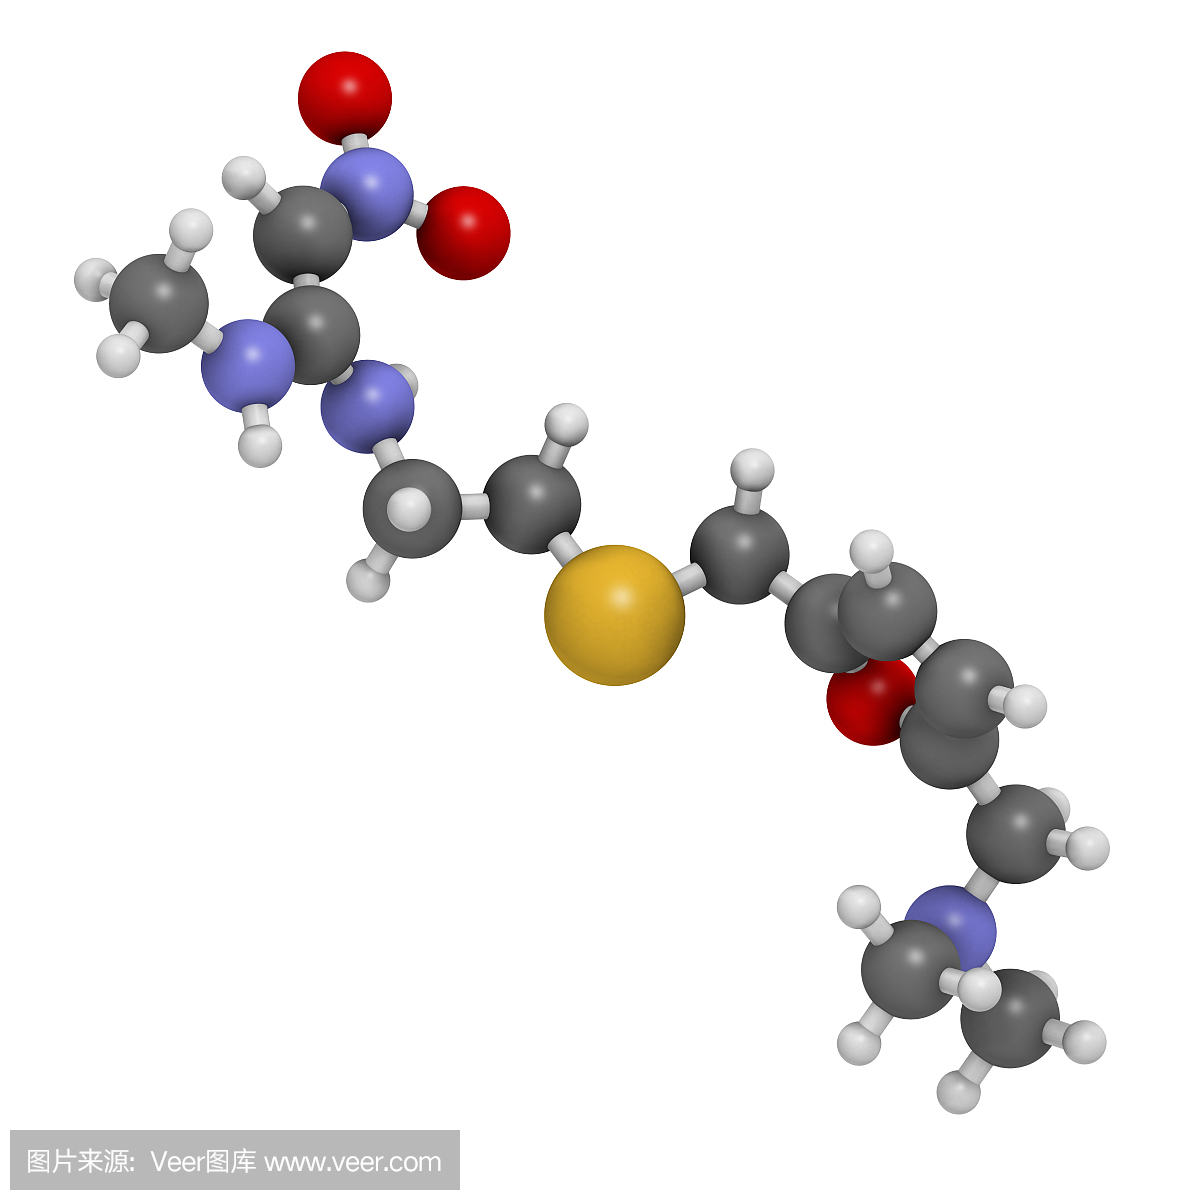 雷尼替丁消化性溃疡病药物,化学结构。